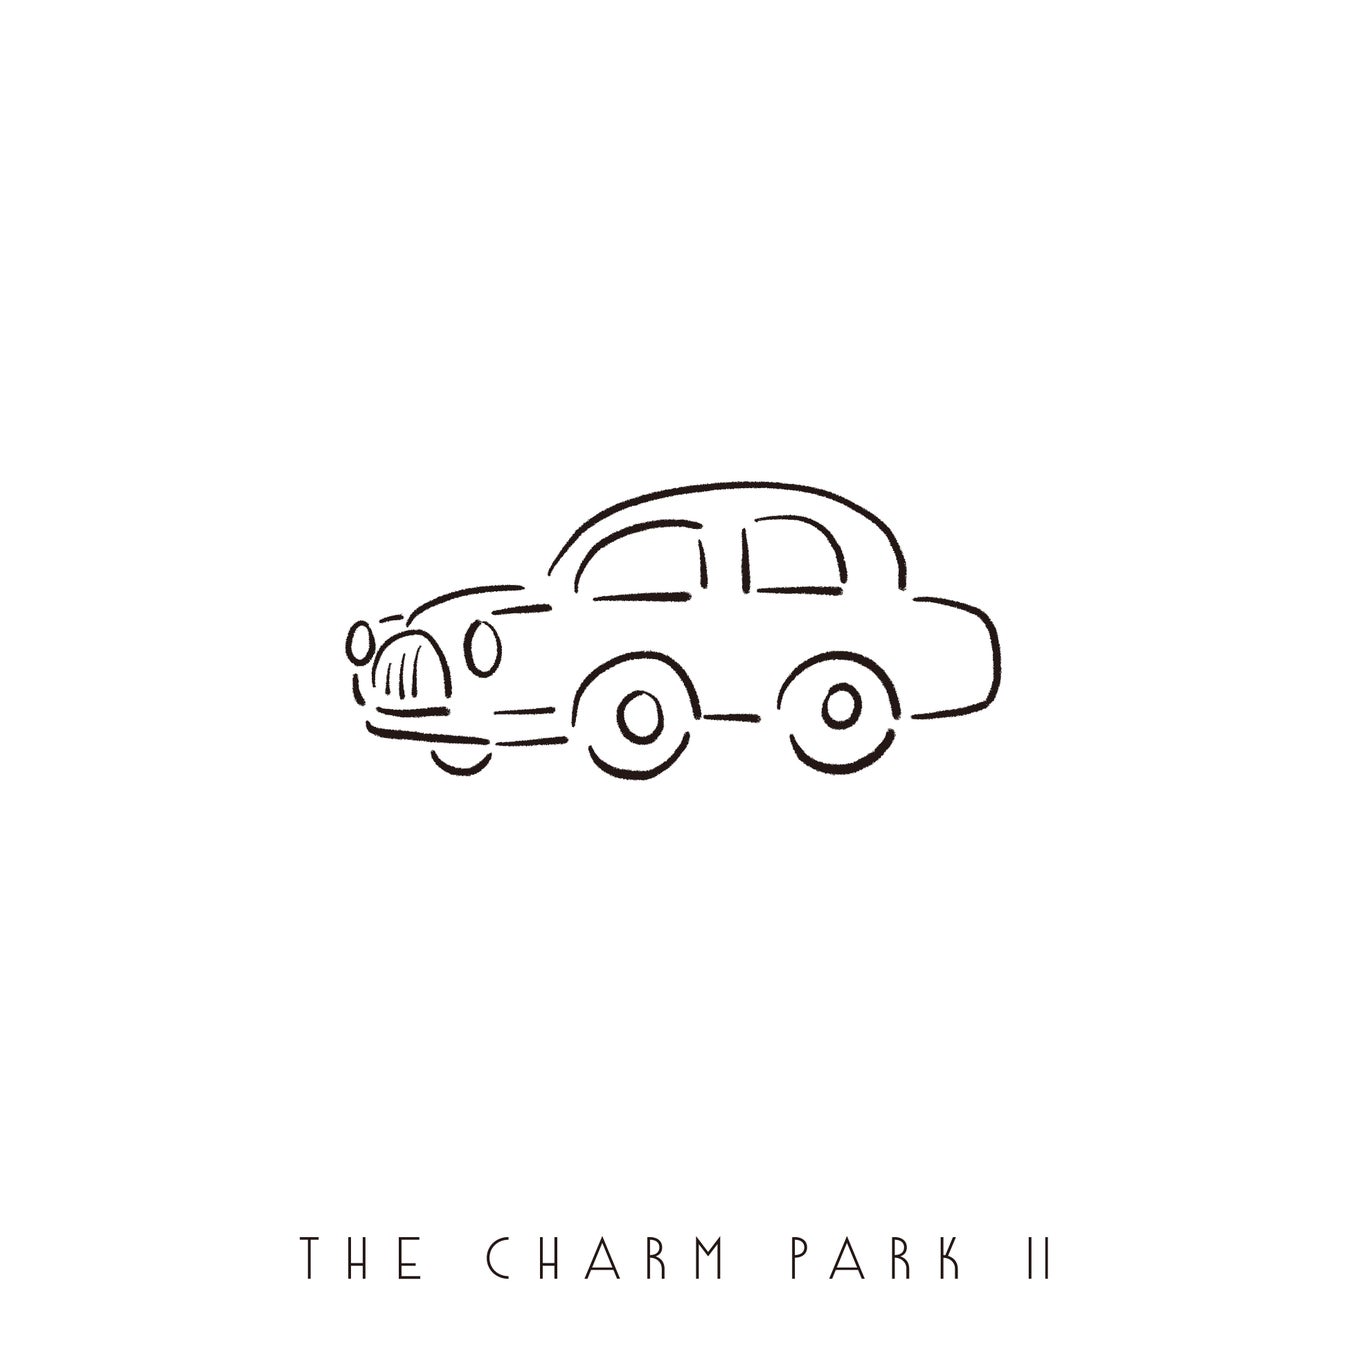 THE CHARM PARKが2年ぶりとなる4th フルアルバムをリリースのサブ画像2